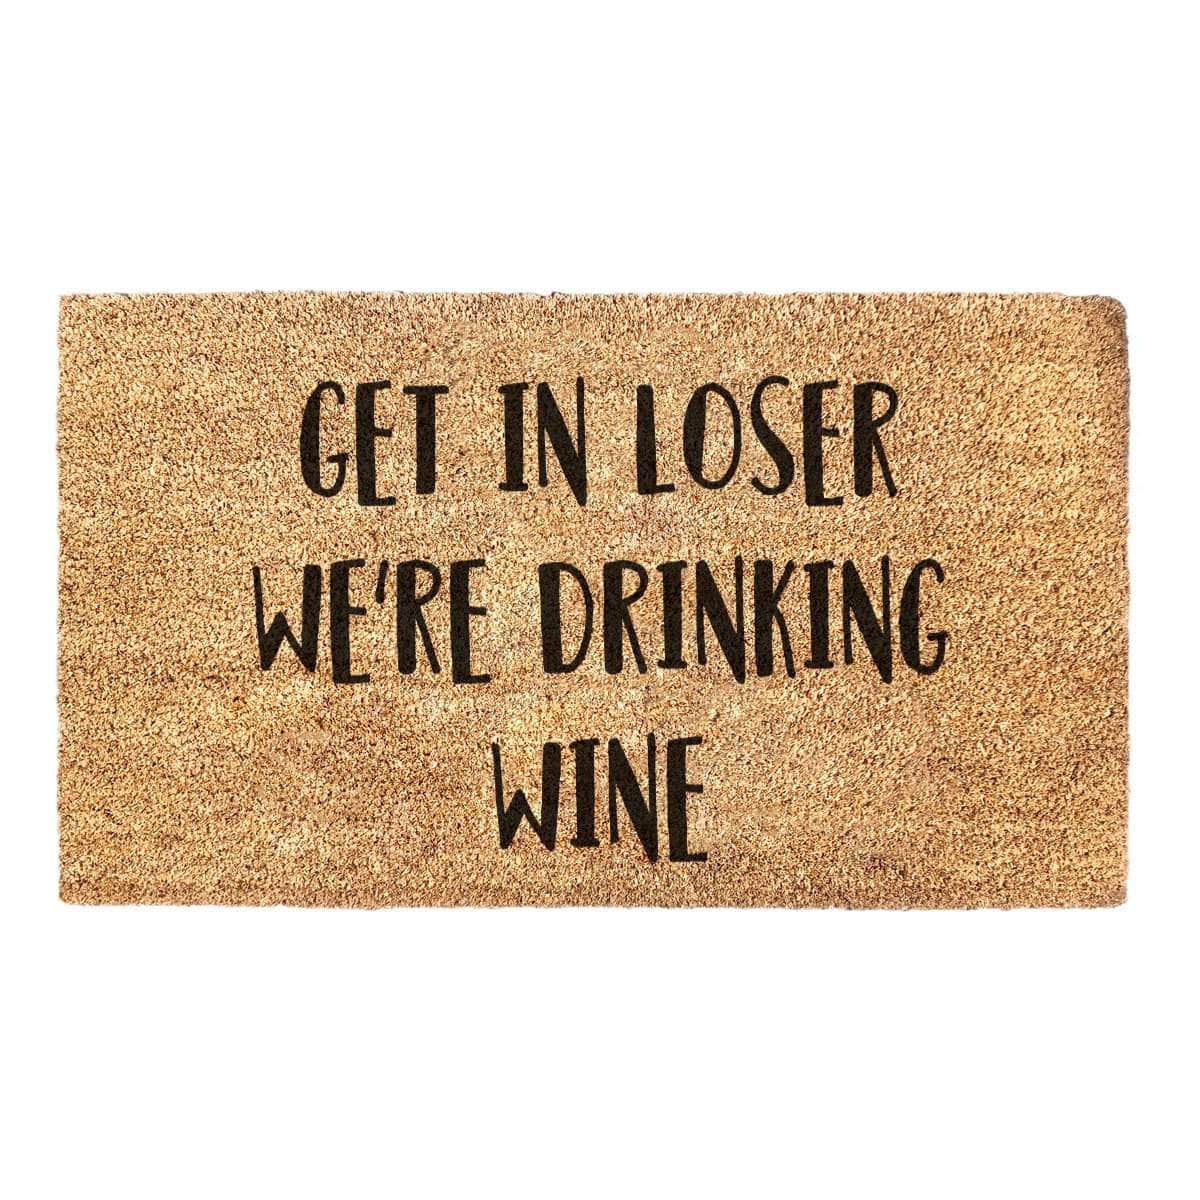 Get In Loser We're Drinking Wine - Mean Girls Doormat